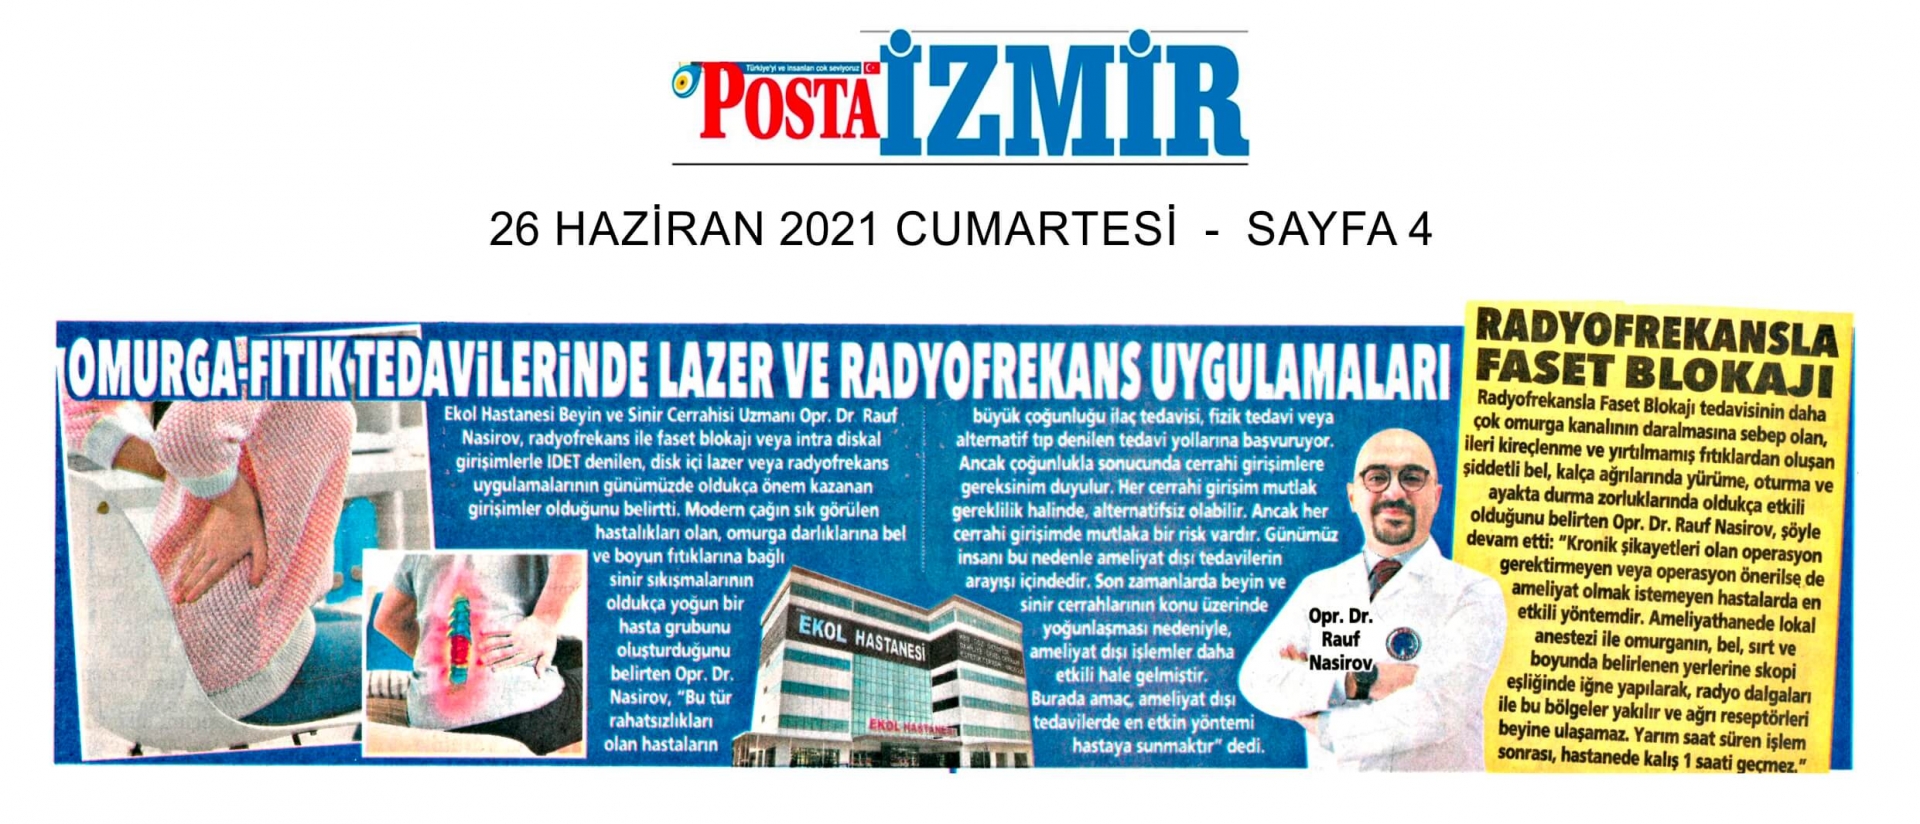 26/06/2021 - Posta İzmir 